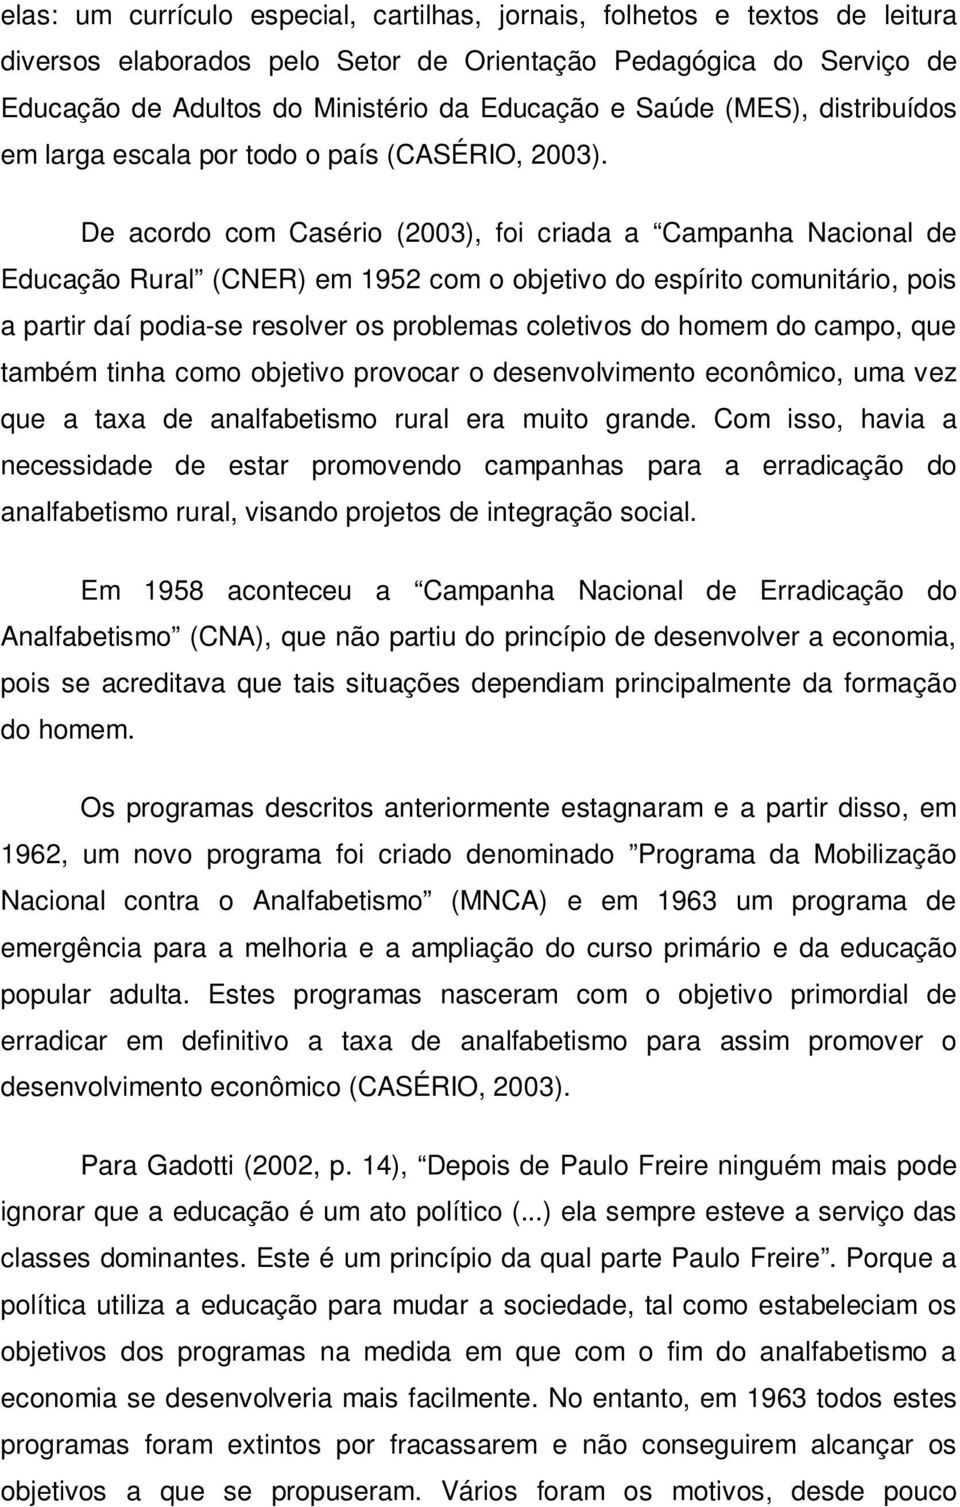 De acordo com Casério (2003), foi criada a Campanha Nacional de Educação Rural (CNER) em 1952 com o objetivo do espírito comunitário, pois a partir daí podia-se resolver os problemas coletivos do